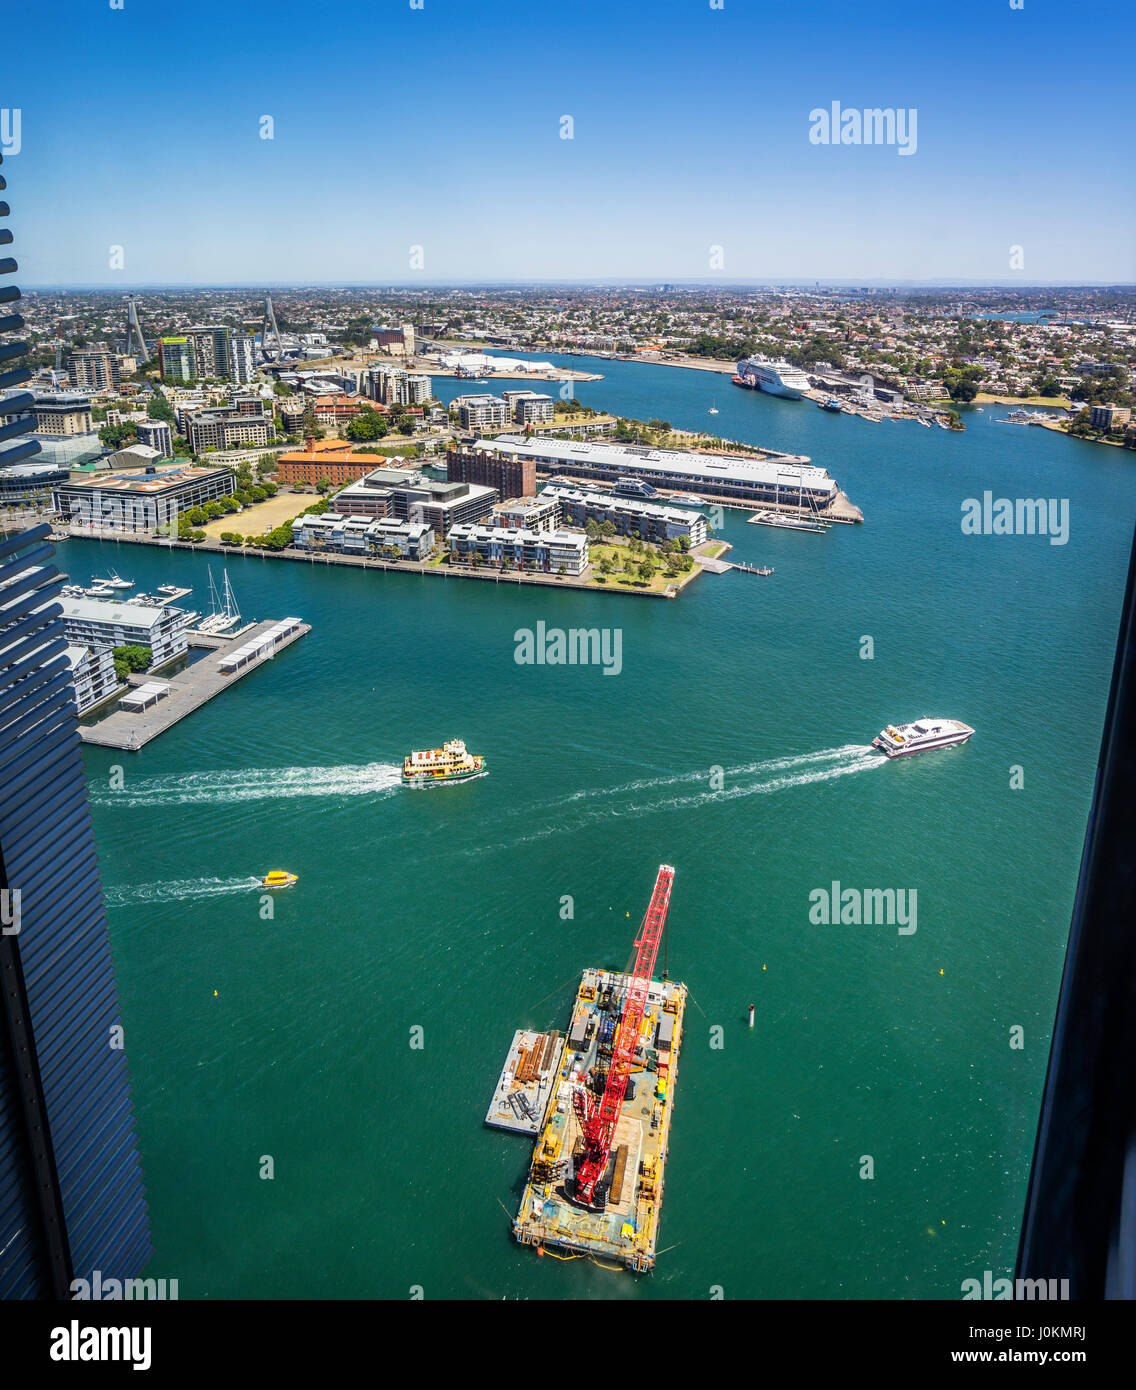 L'Australie, New South Wales, Sydney, vue de la baie de Johnston et Pyrmont Bay à partir de deux tour International, Barangaroo Banque D'Images